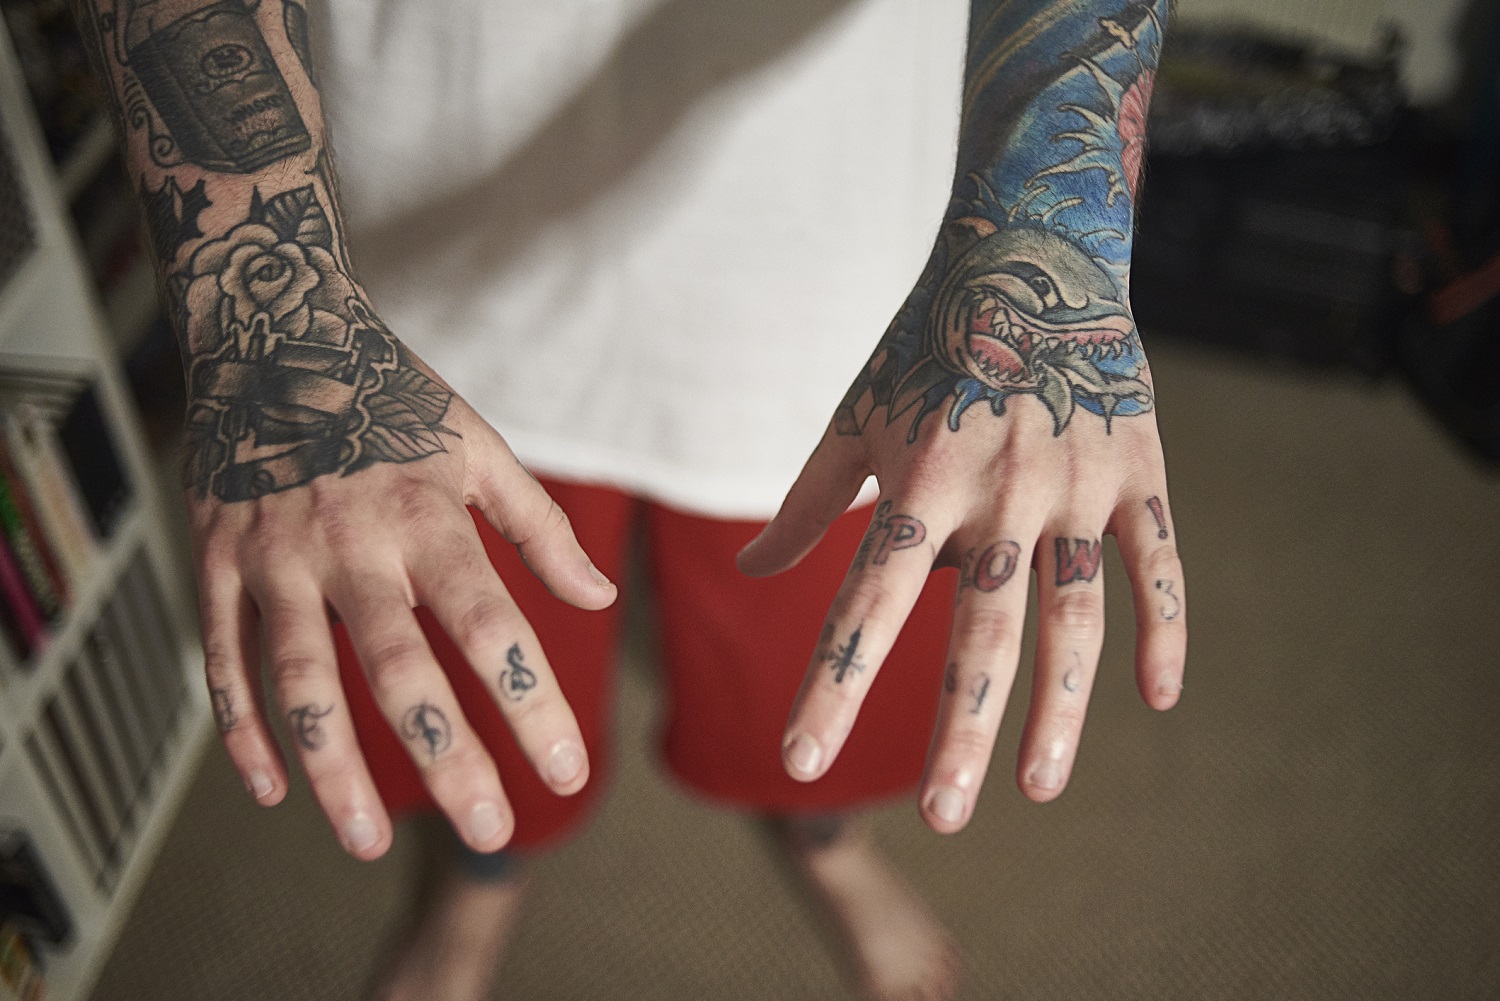 Dermatología descarta que la tinta de los tatuajes provoque cáncer